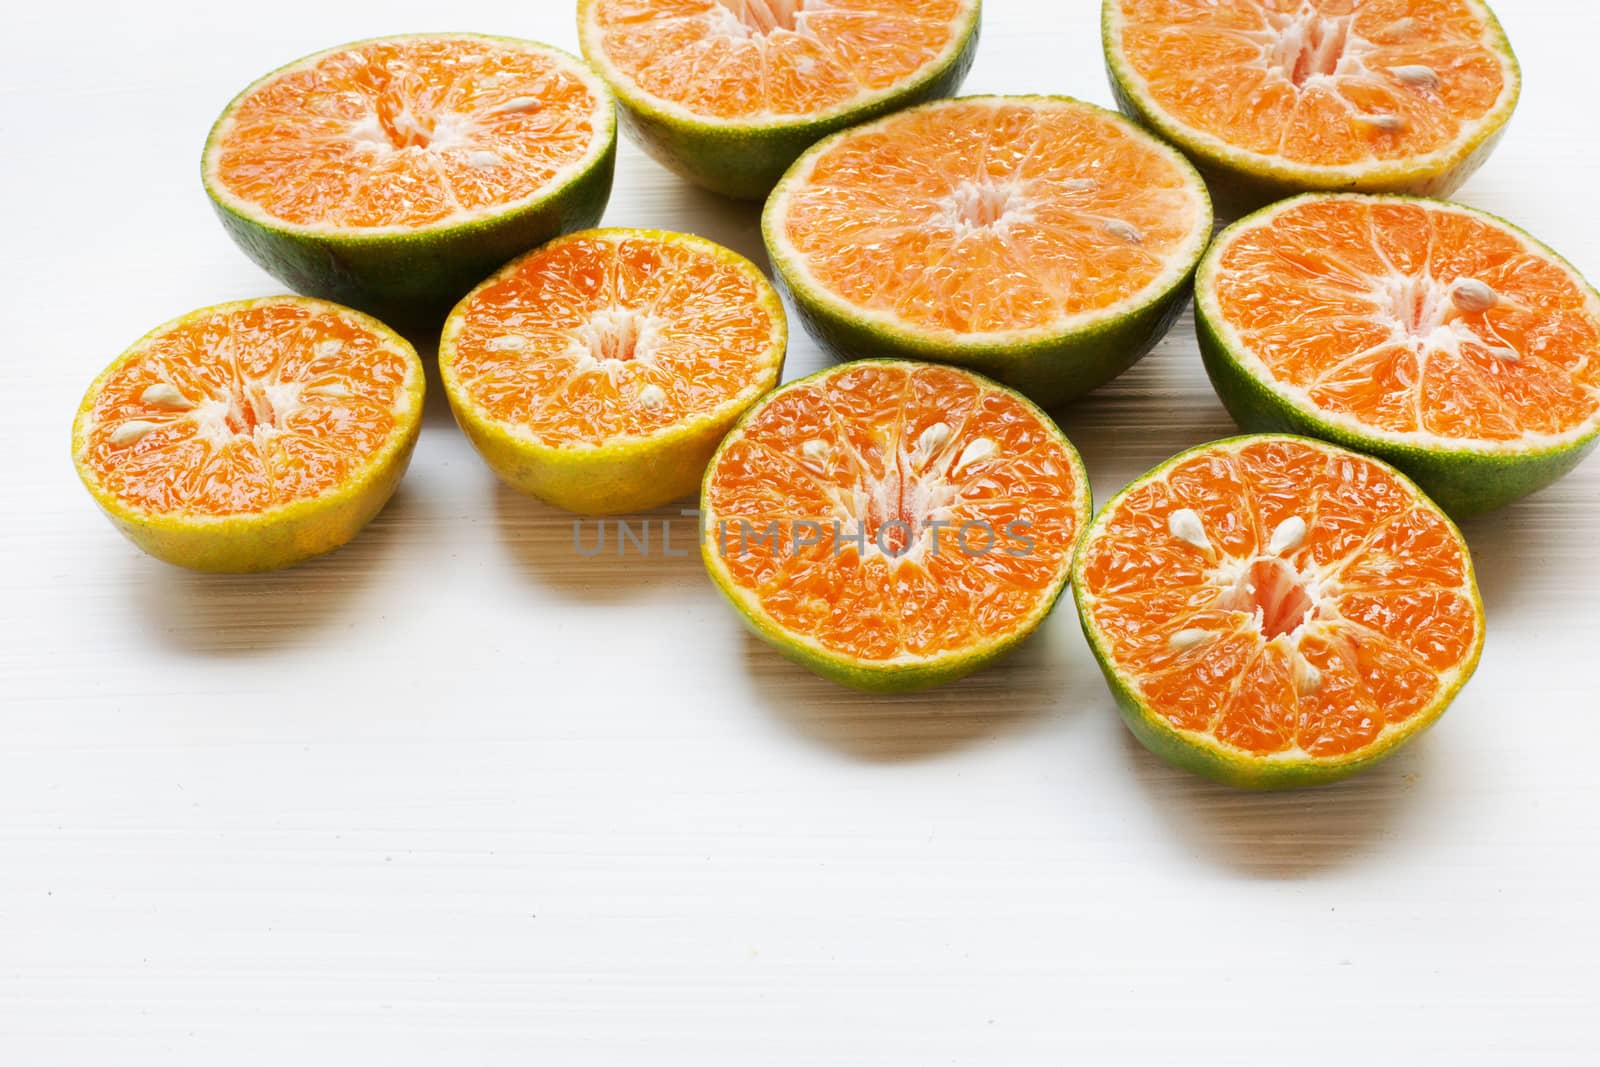 Fresh Orange  isolated on white background.